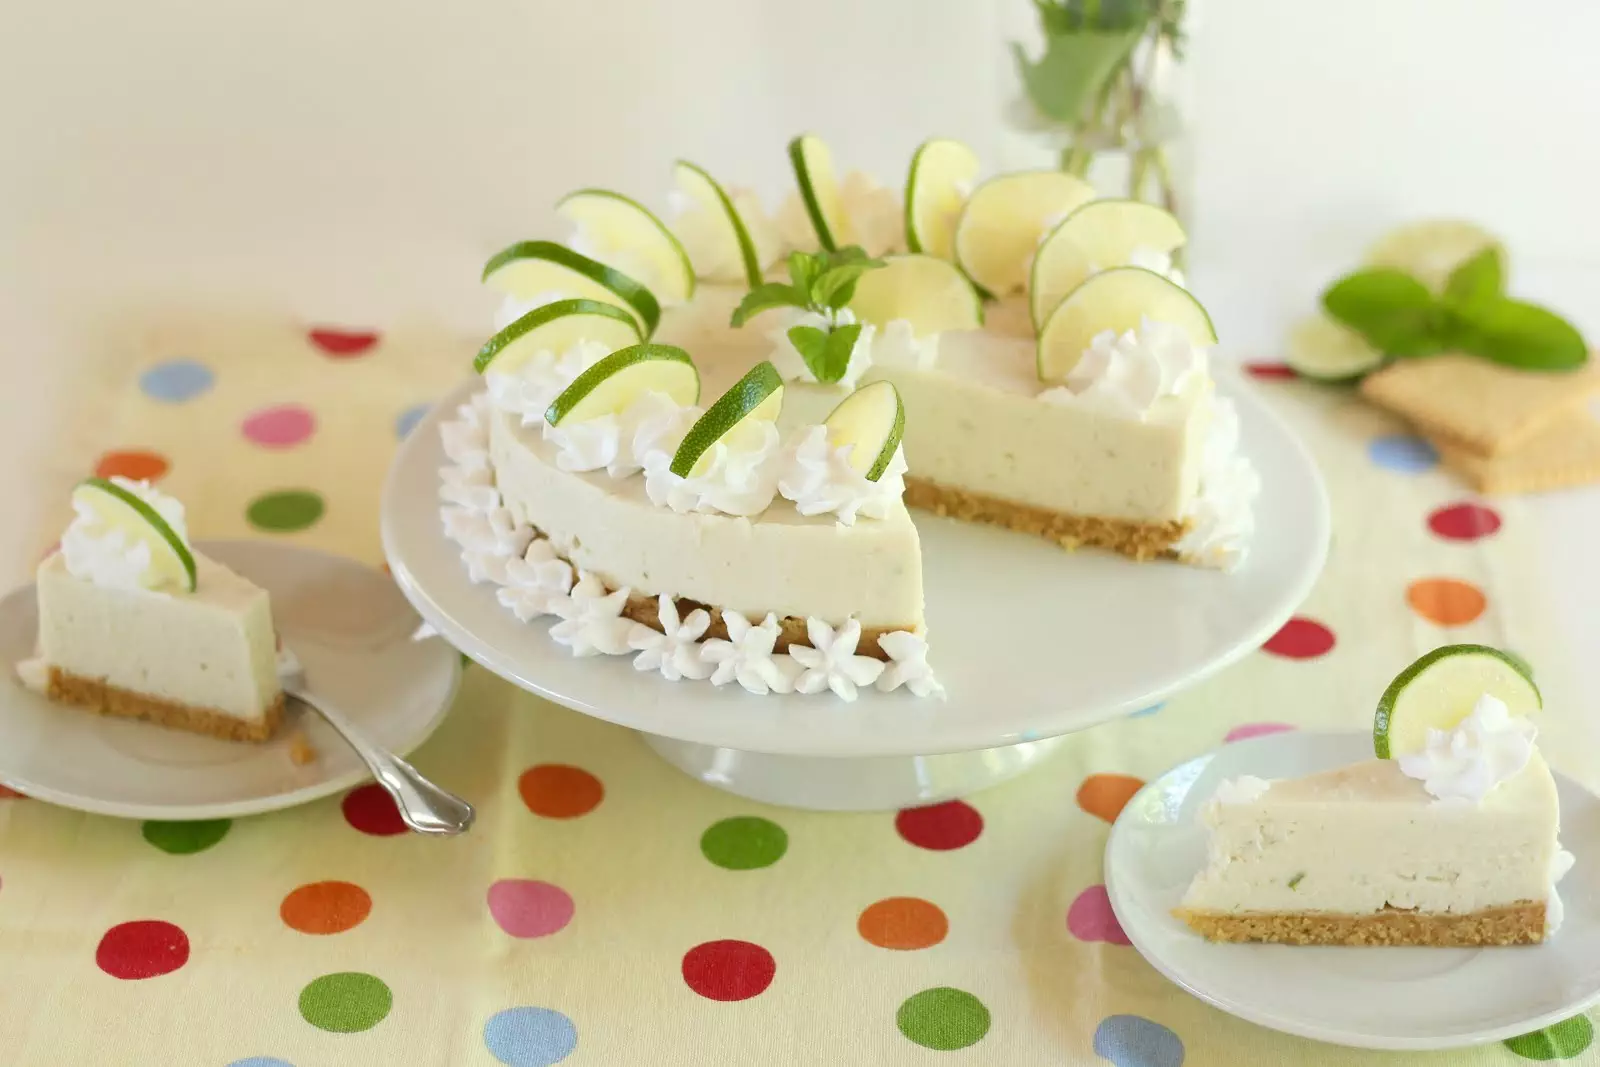 Erfrischende Limetten-Joghurt-Torte ohne Backen - klassisch und vegan | Rezept und Video